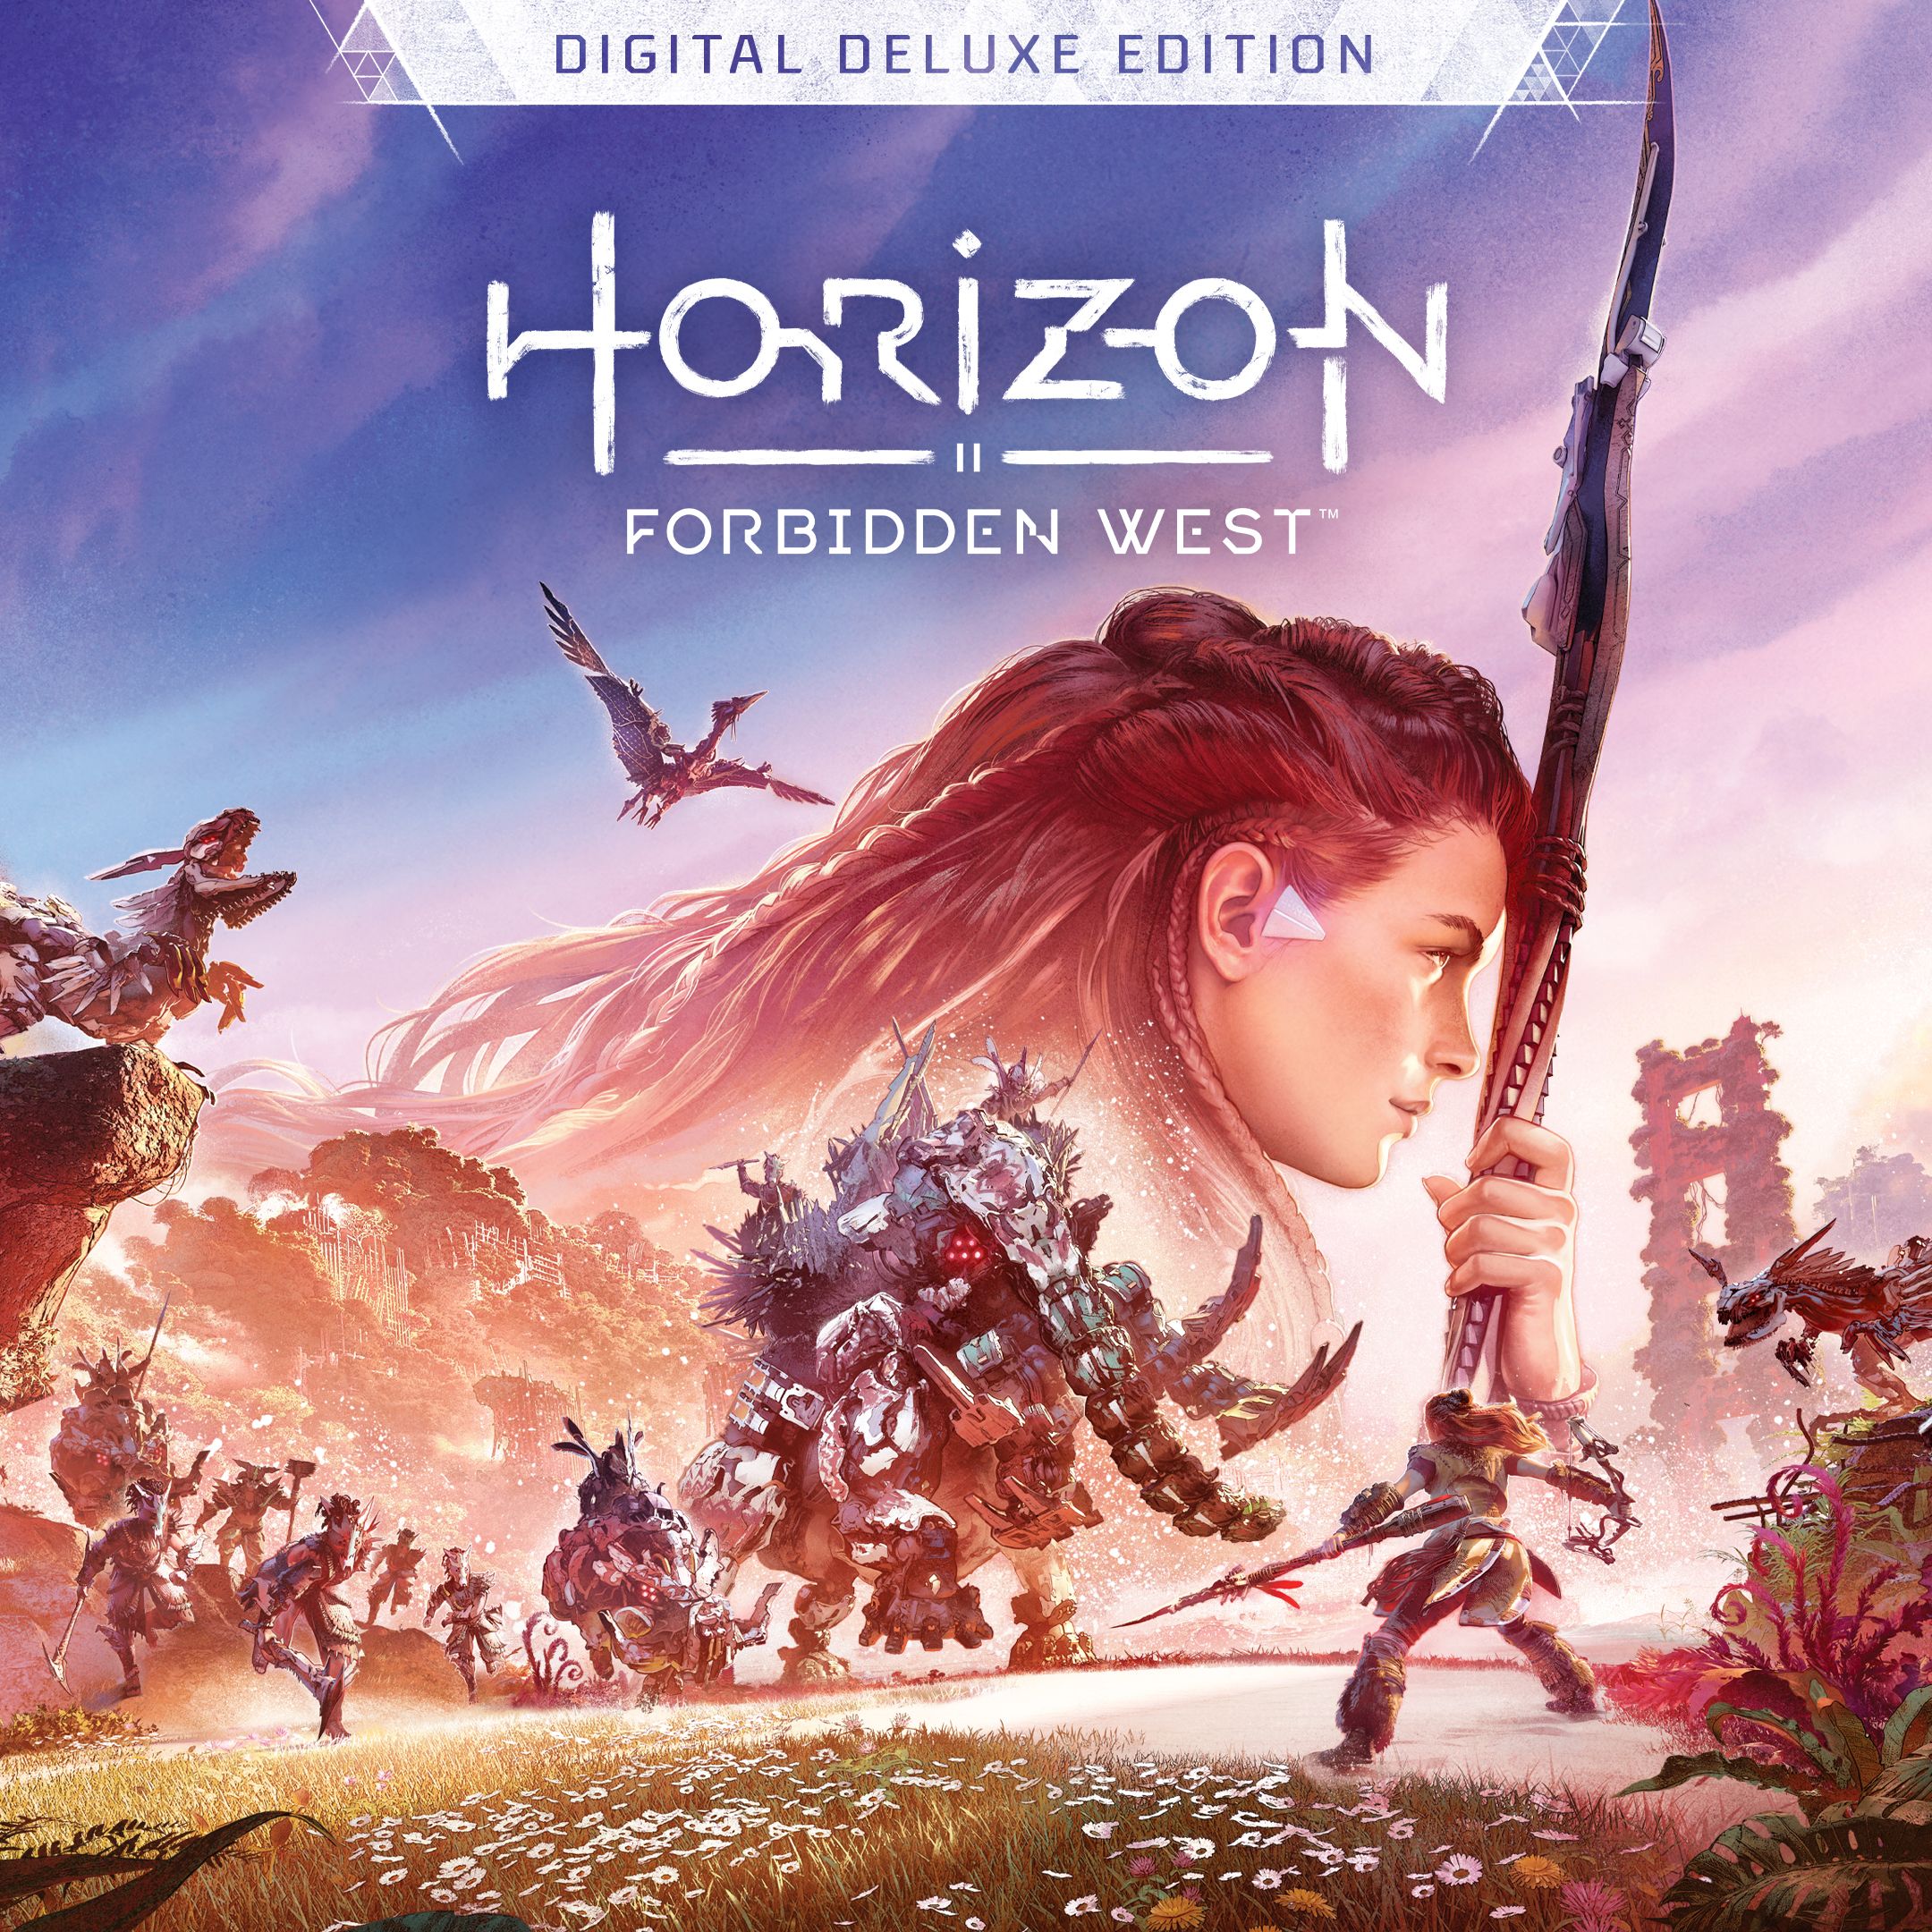 Horizon Forbidden West Digital Deluxe Edition PS4 & PS5